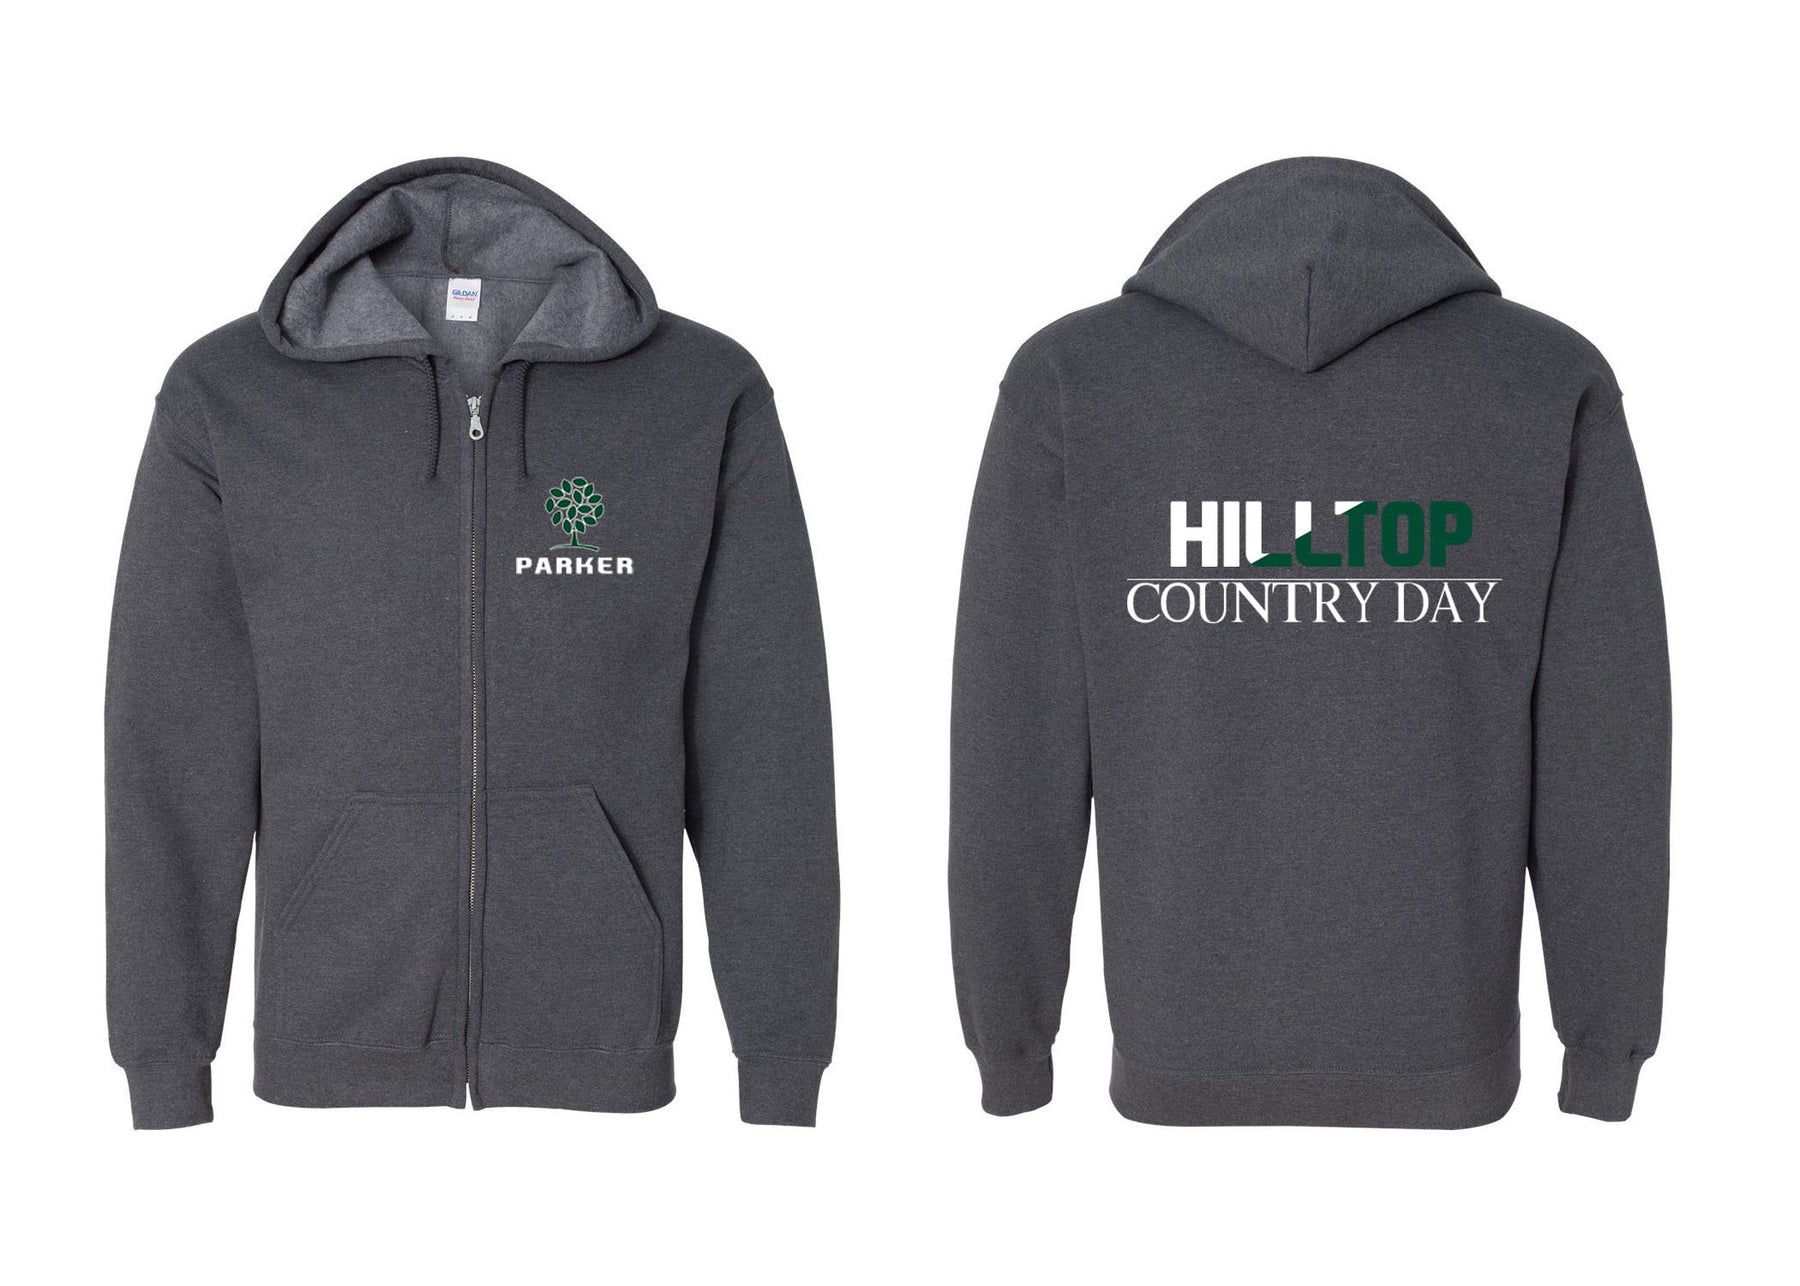 Hilltop Country Day School design 4 Zip up Sweatshirt